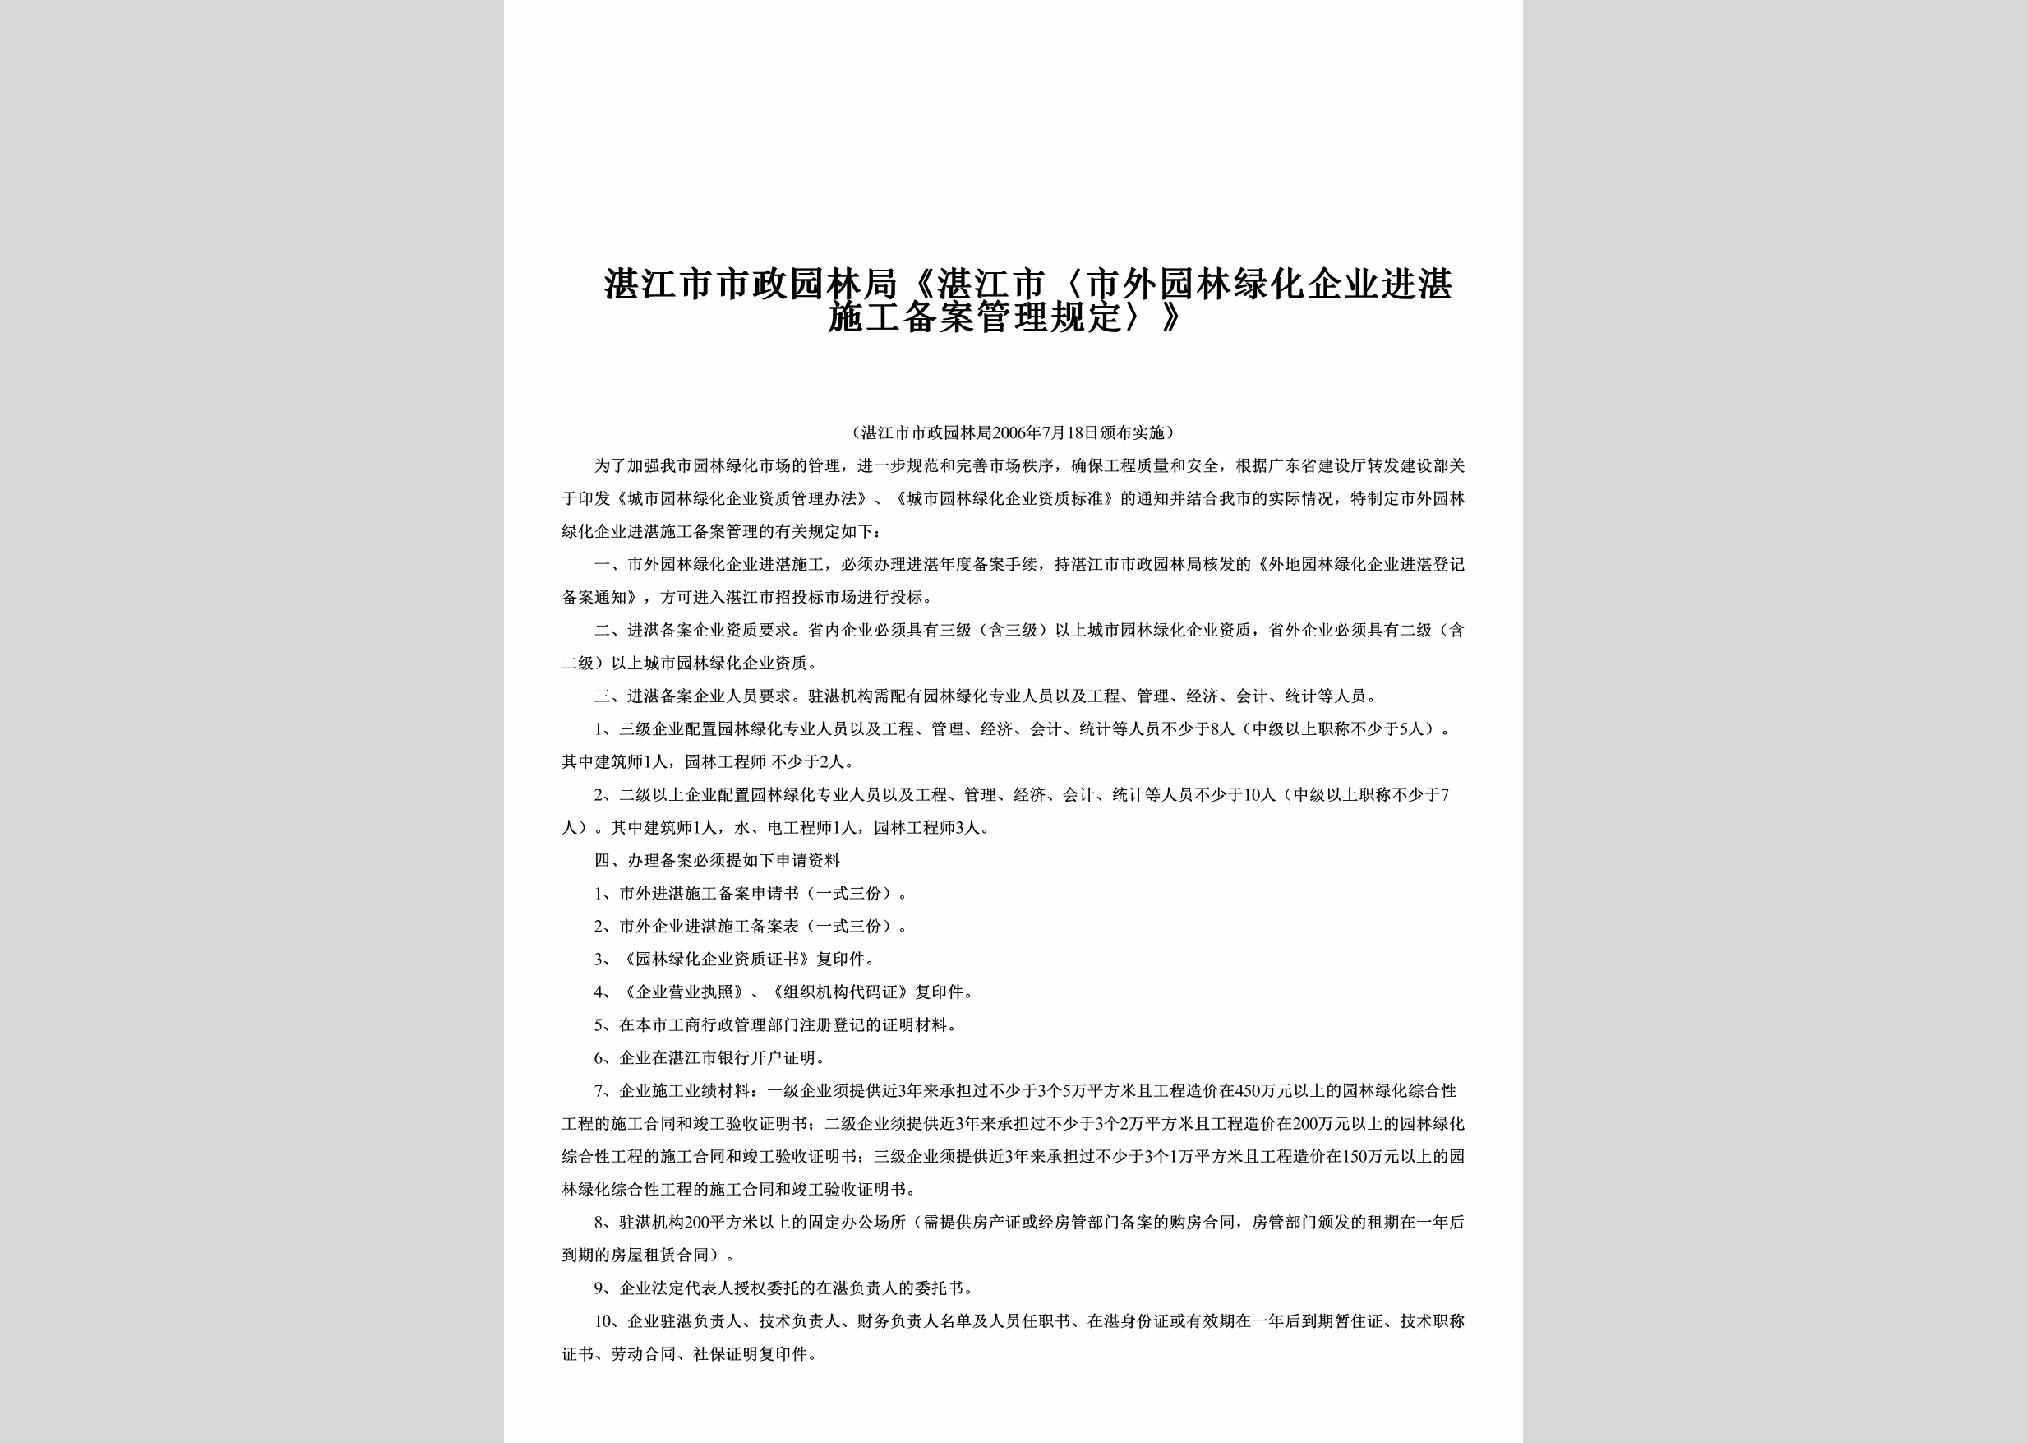 深发[2012]3号：关于贯彻落实《深圳市土地管理制度改革总体方案》的通知